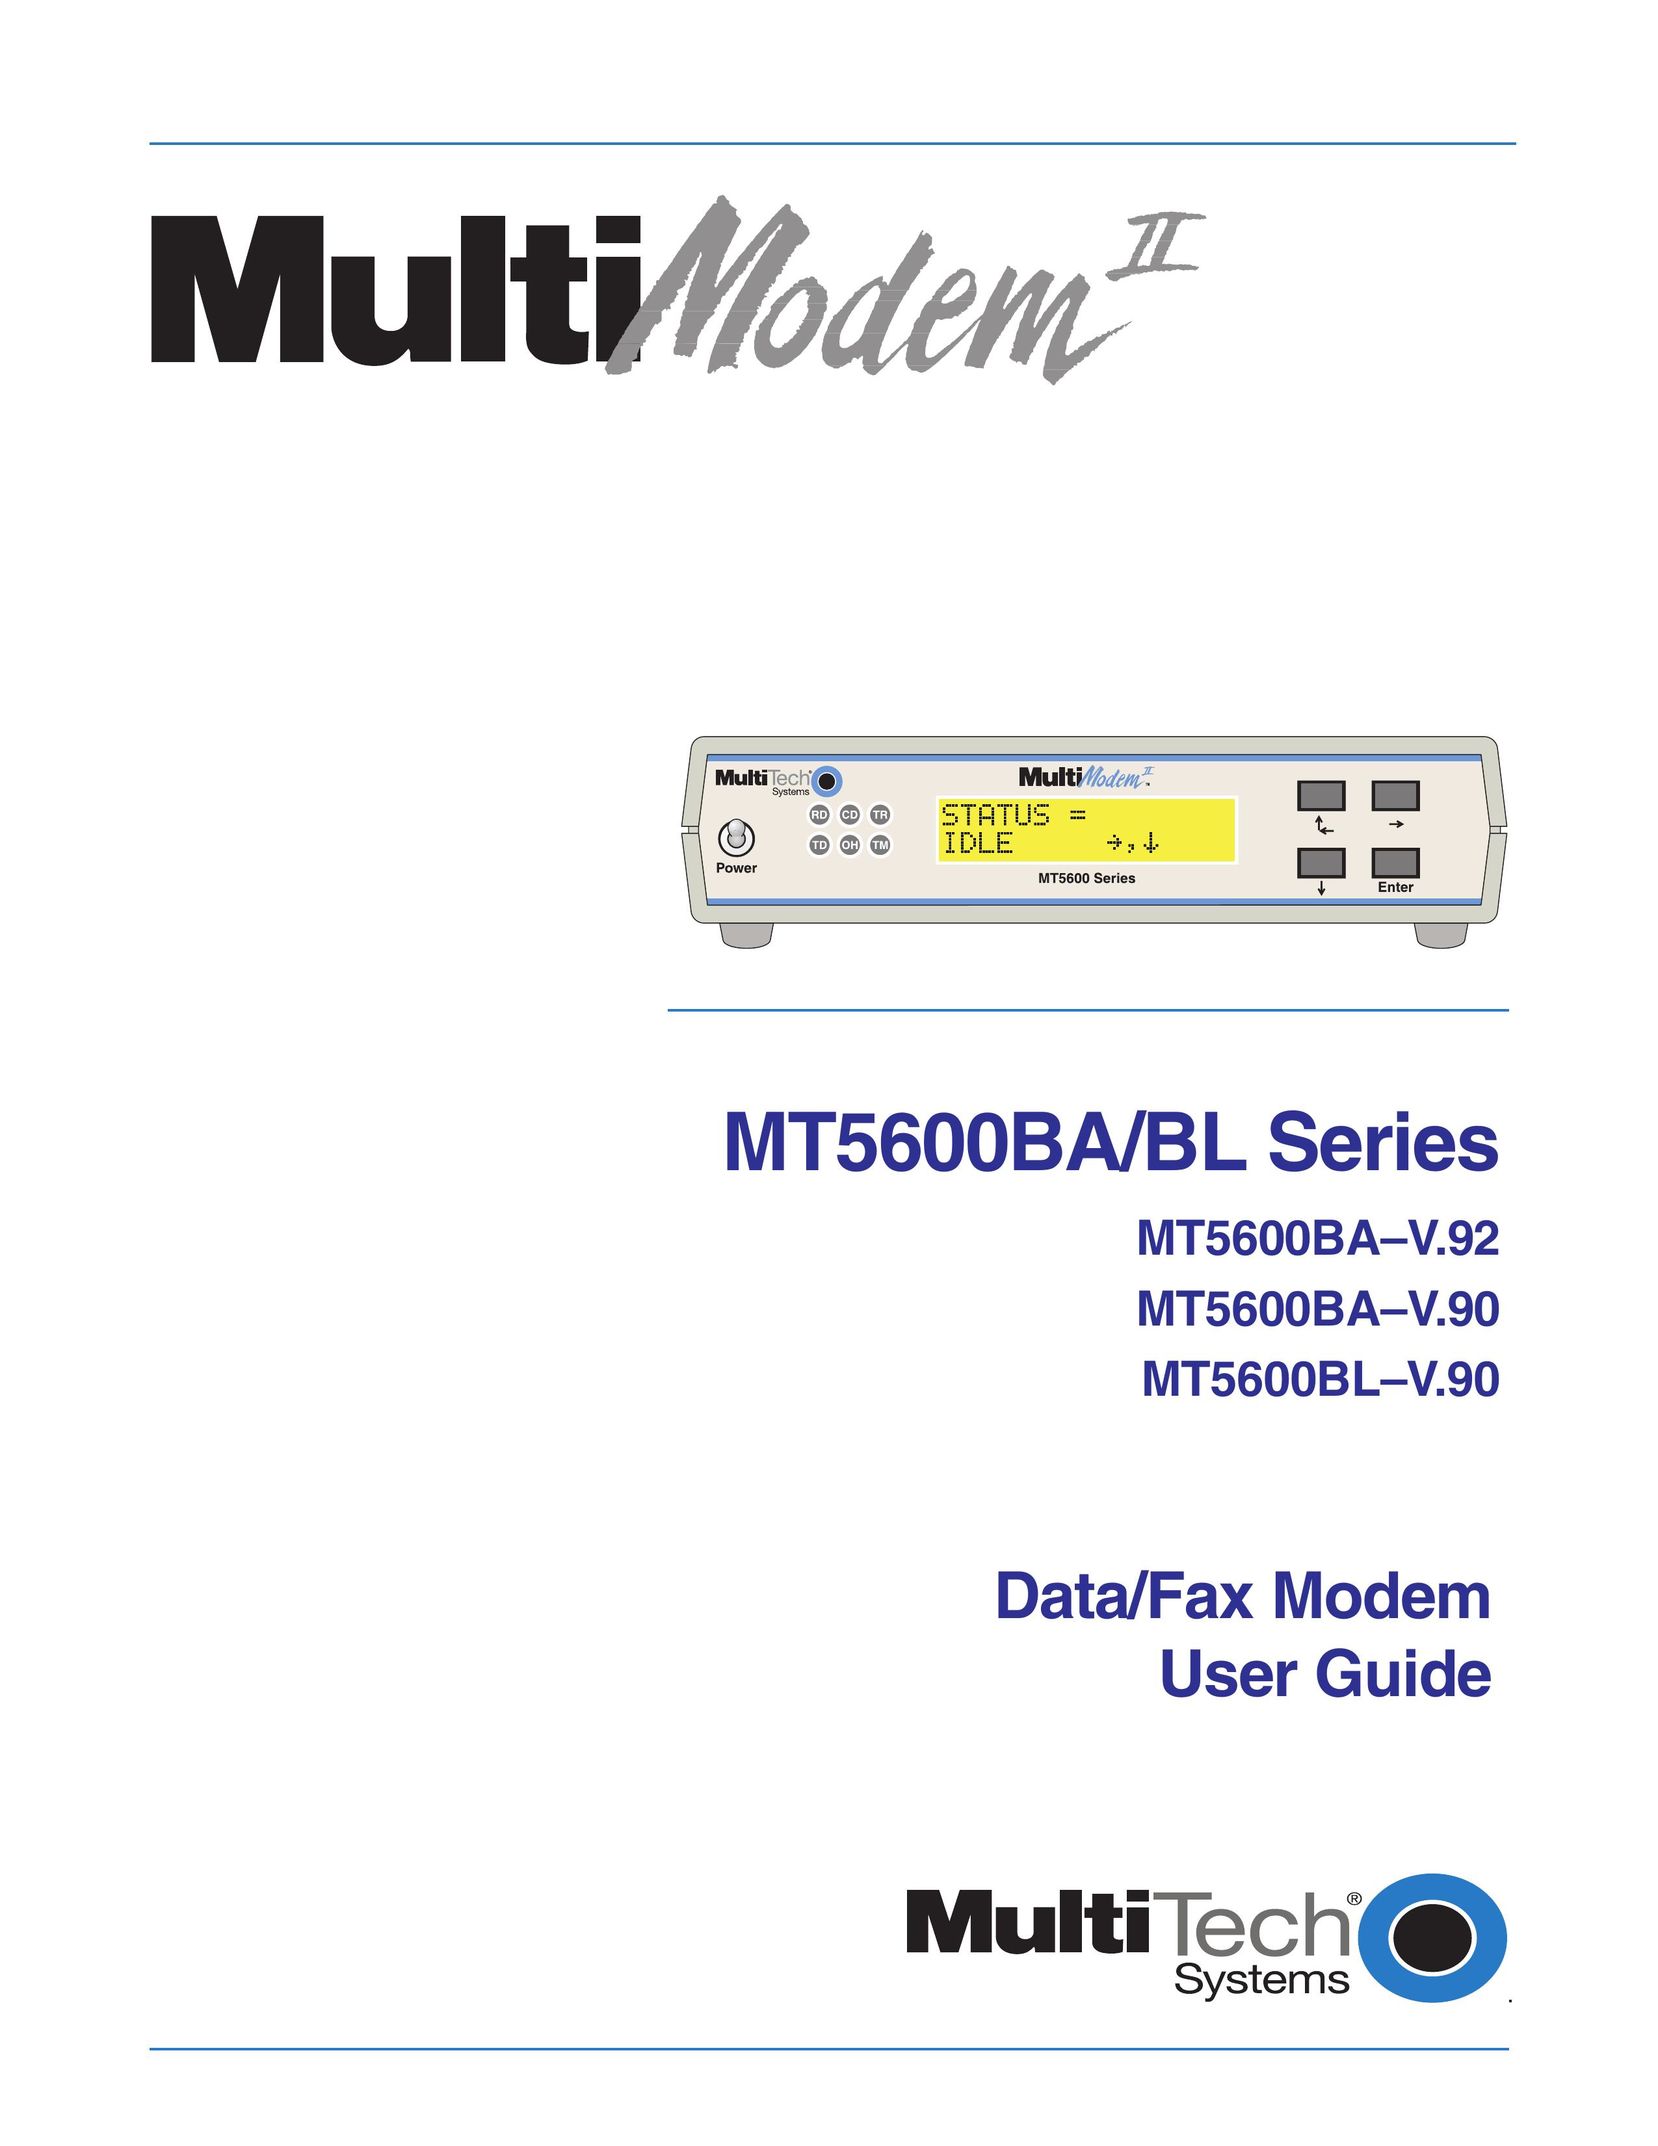 Multitech MT5600BAV.90 Modem User Manual